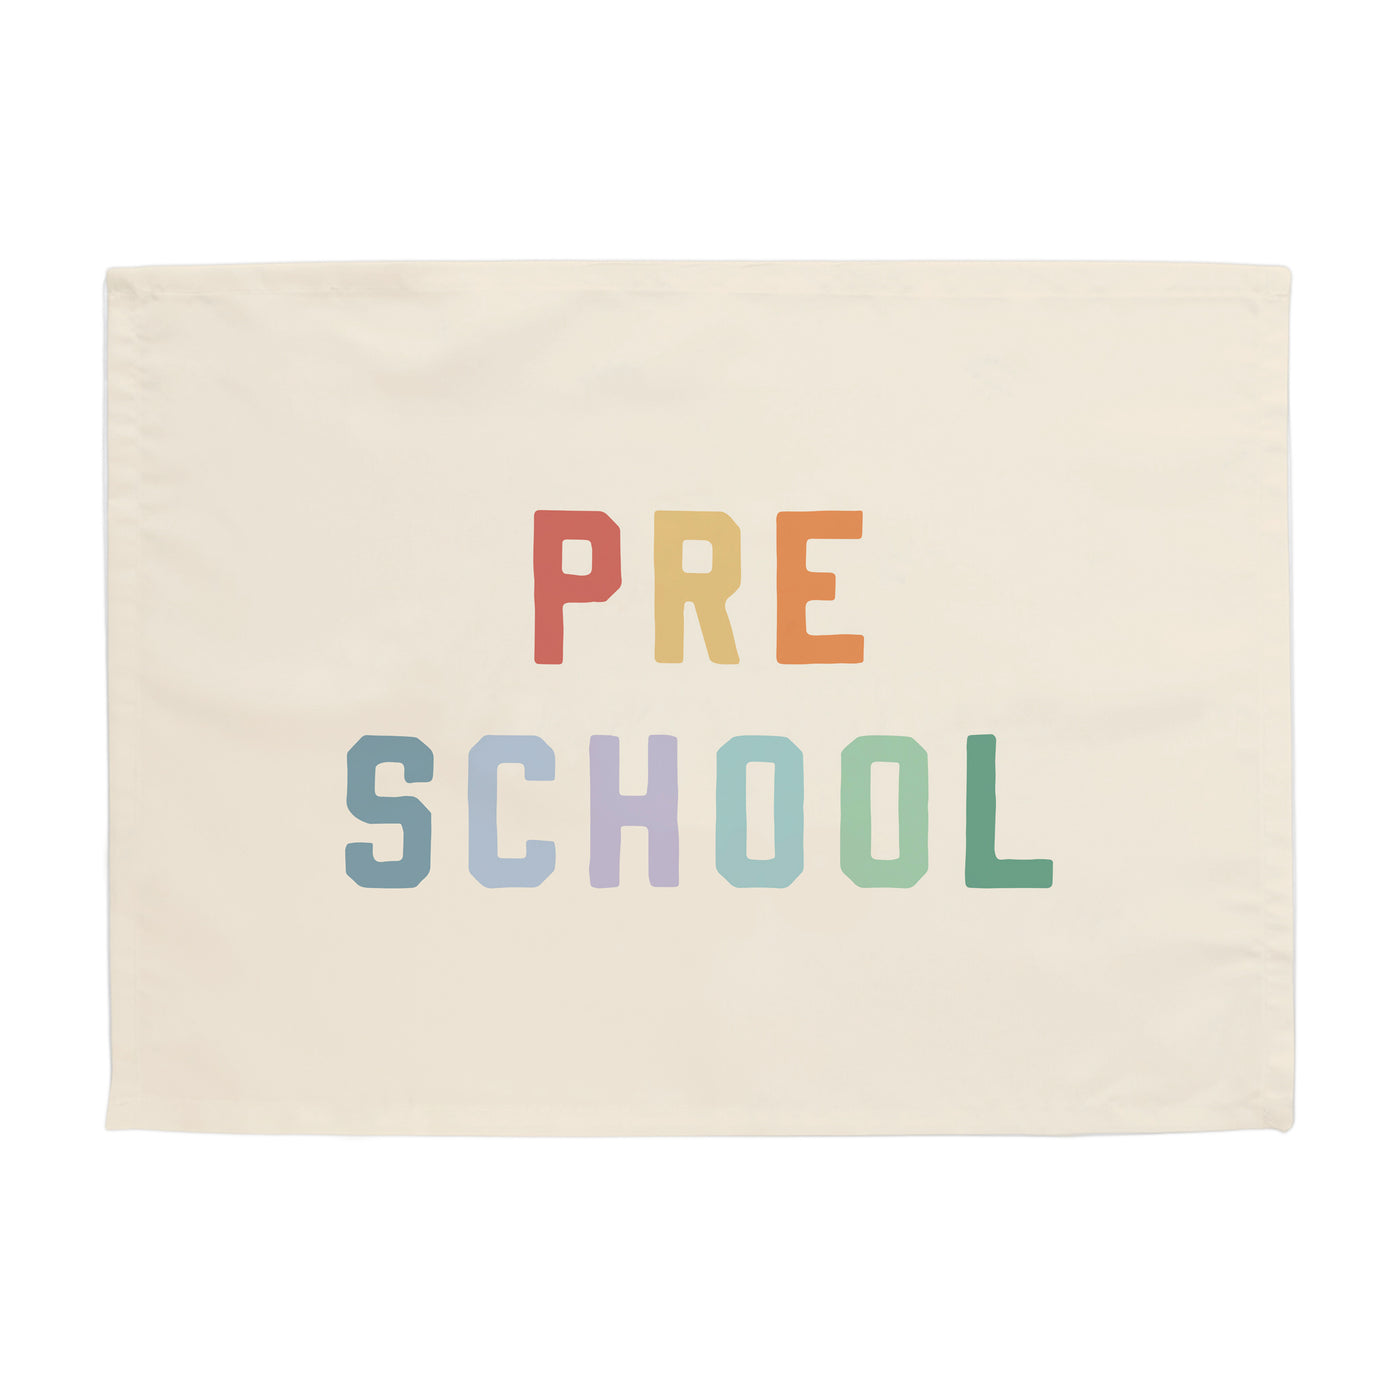 Preschool Banner